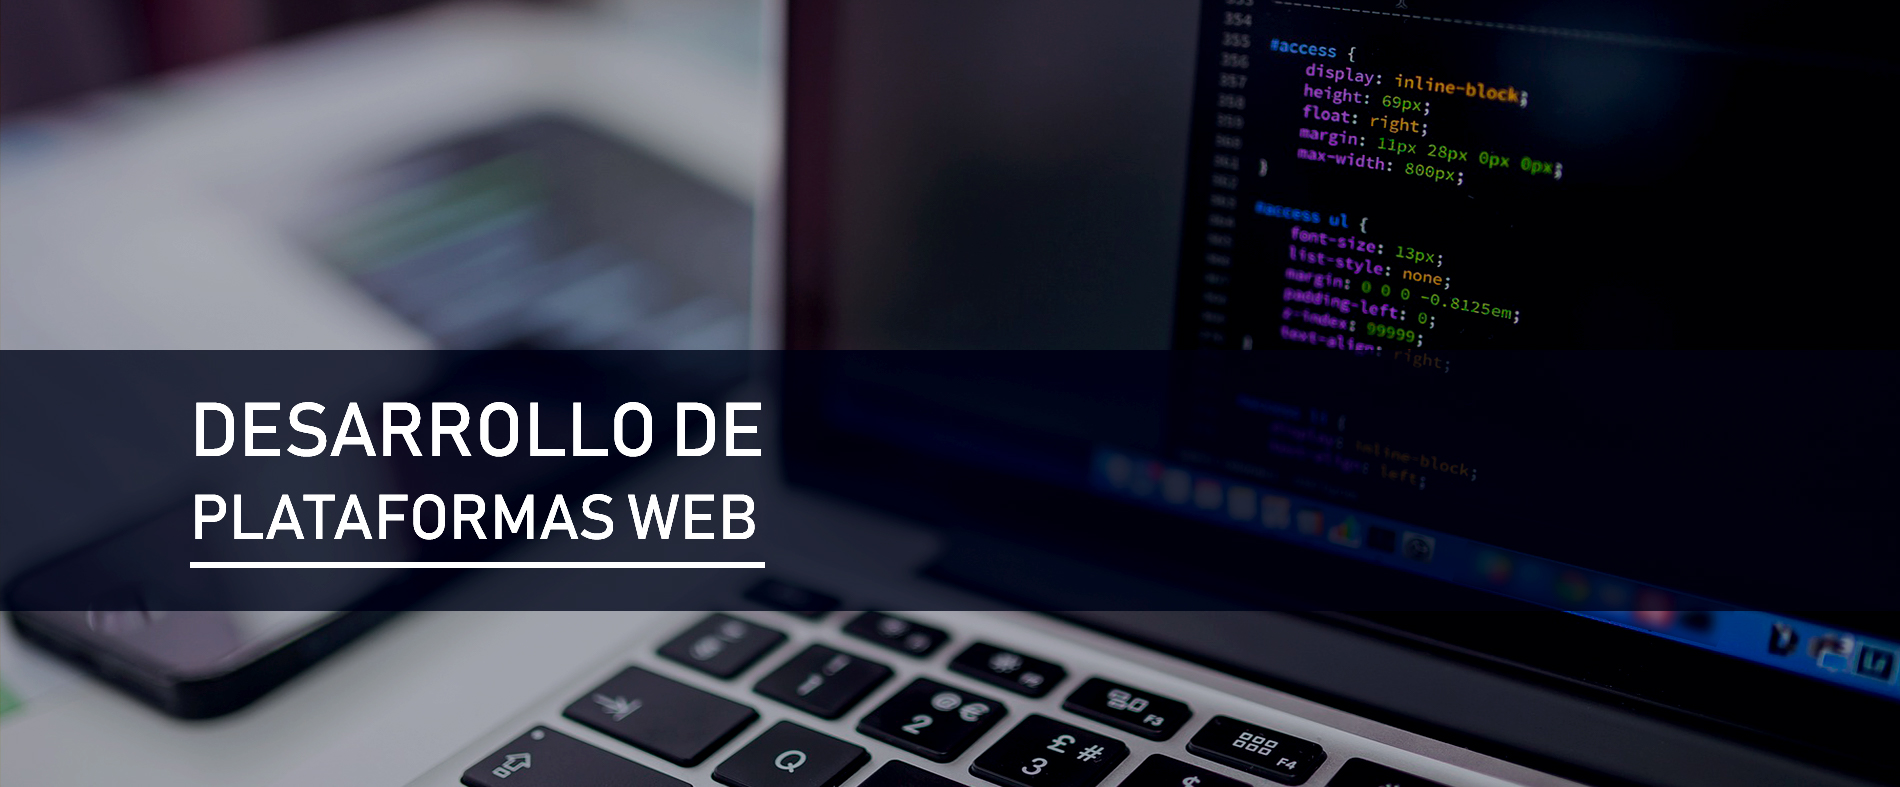 site/webimg/slides/Desarrollo_de_PlataformasWeb_jpg.jpeg